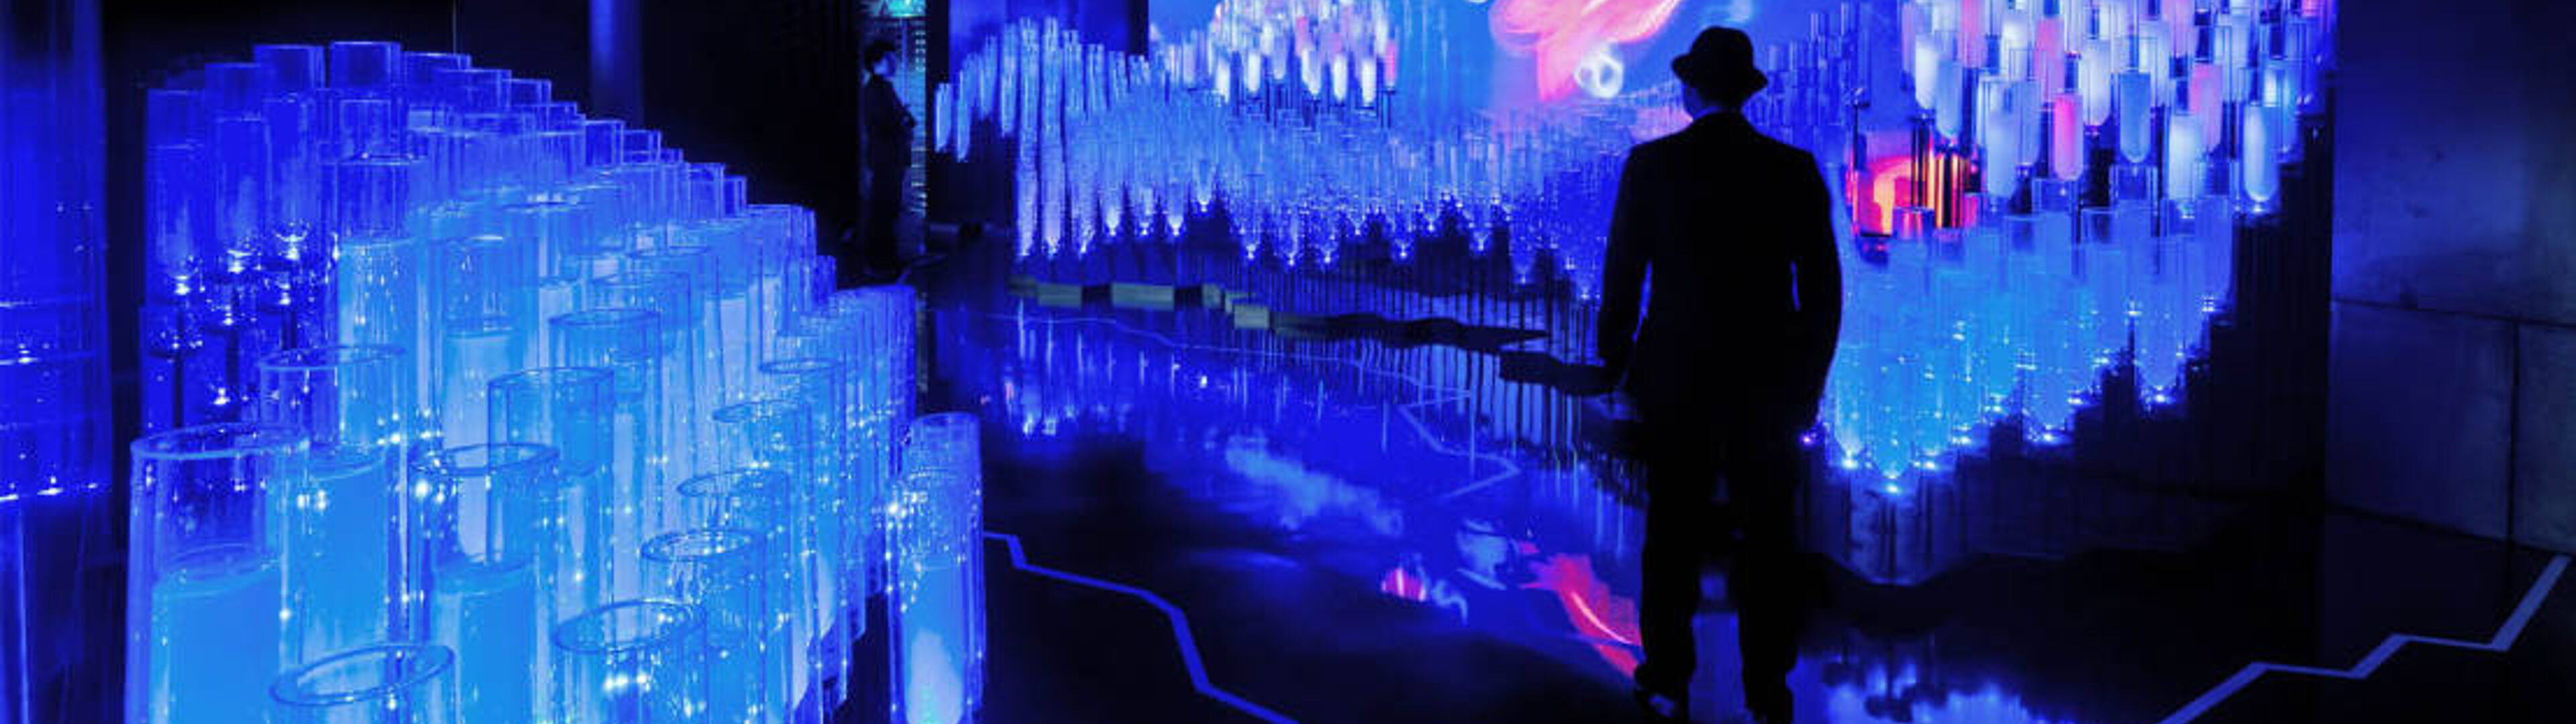 Persona parada en medio de una llamativa instalación de arte luminiscente azul con patrones de luz dinámicos proyectados en la pared.